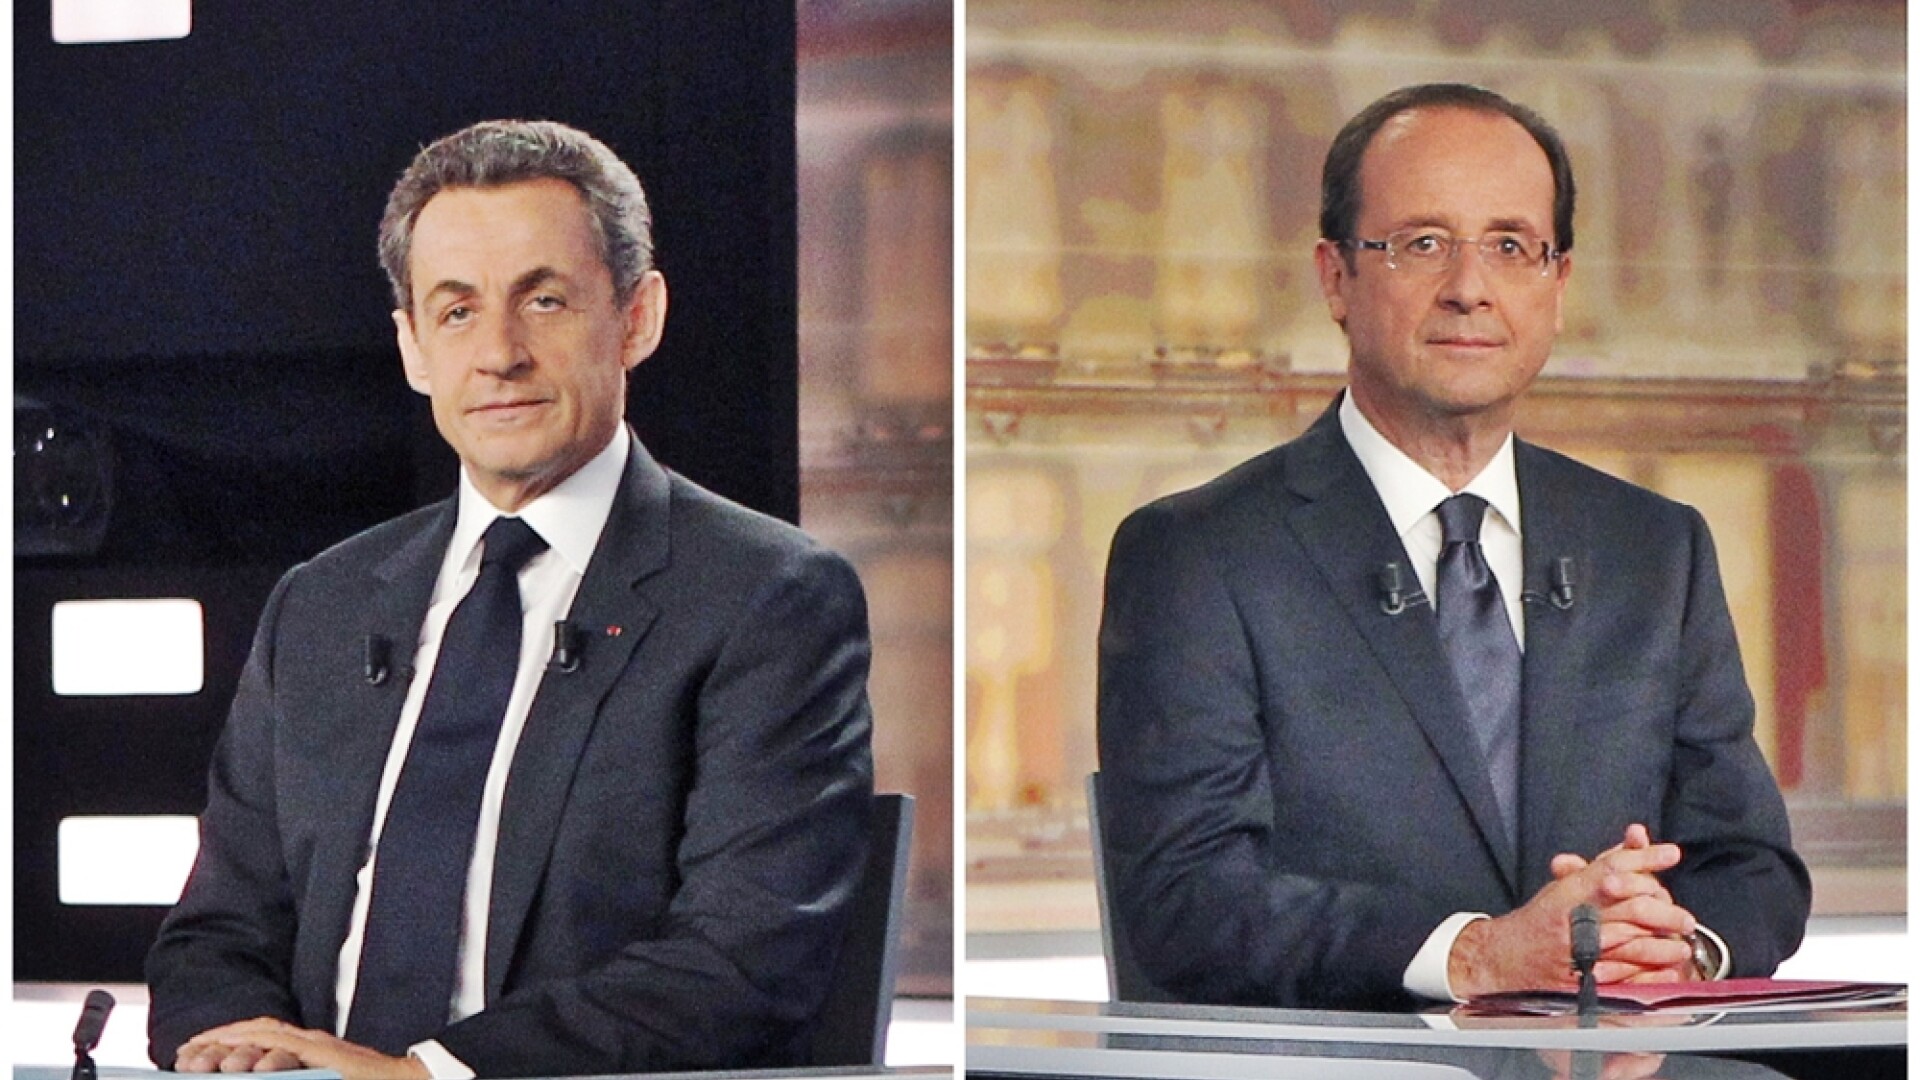 Nicolas Sarkozy, Francois Hollande